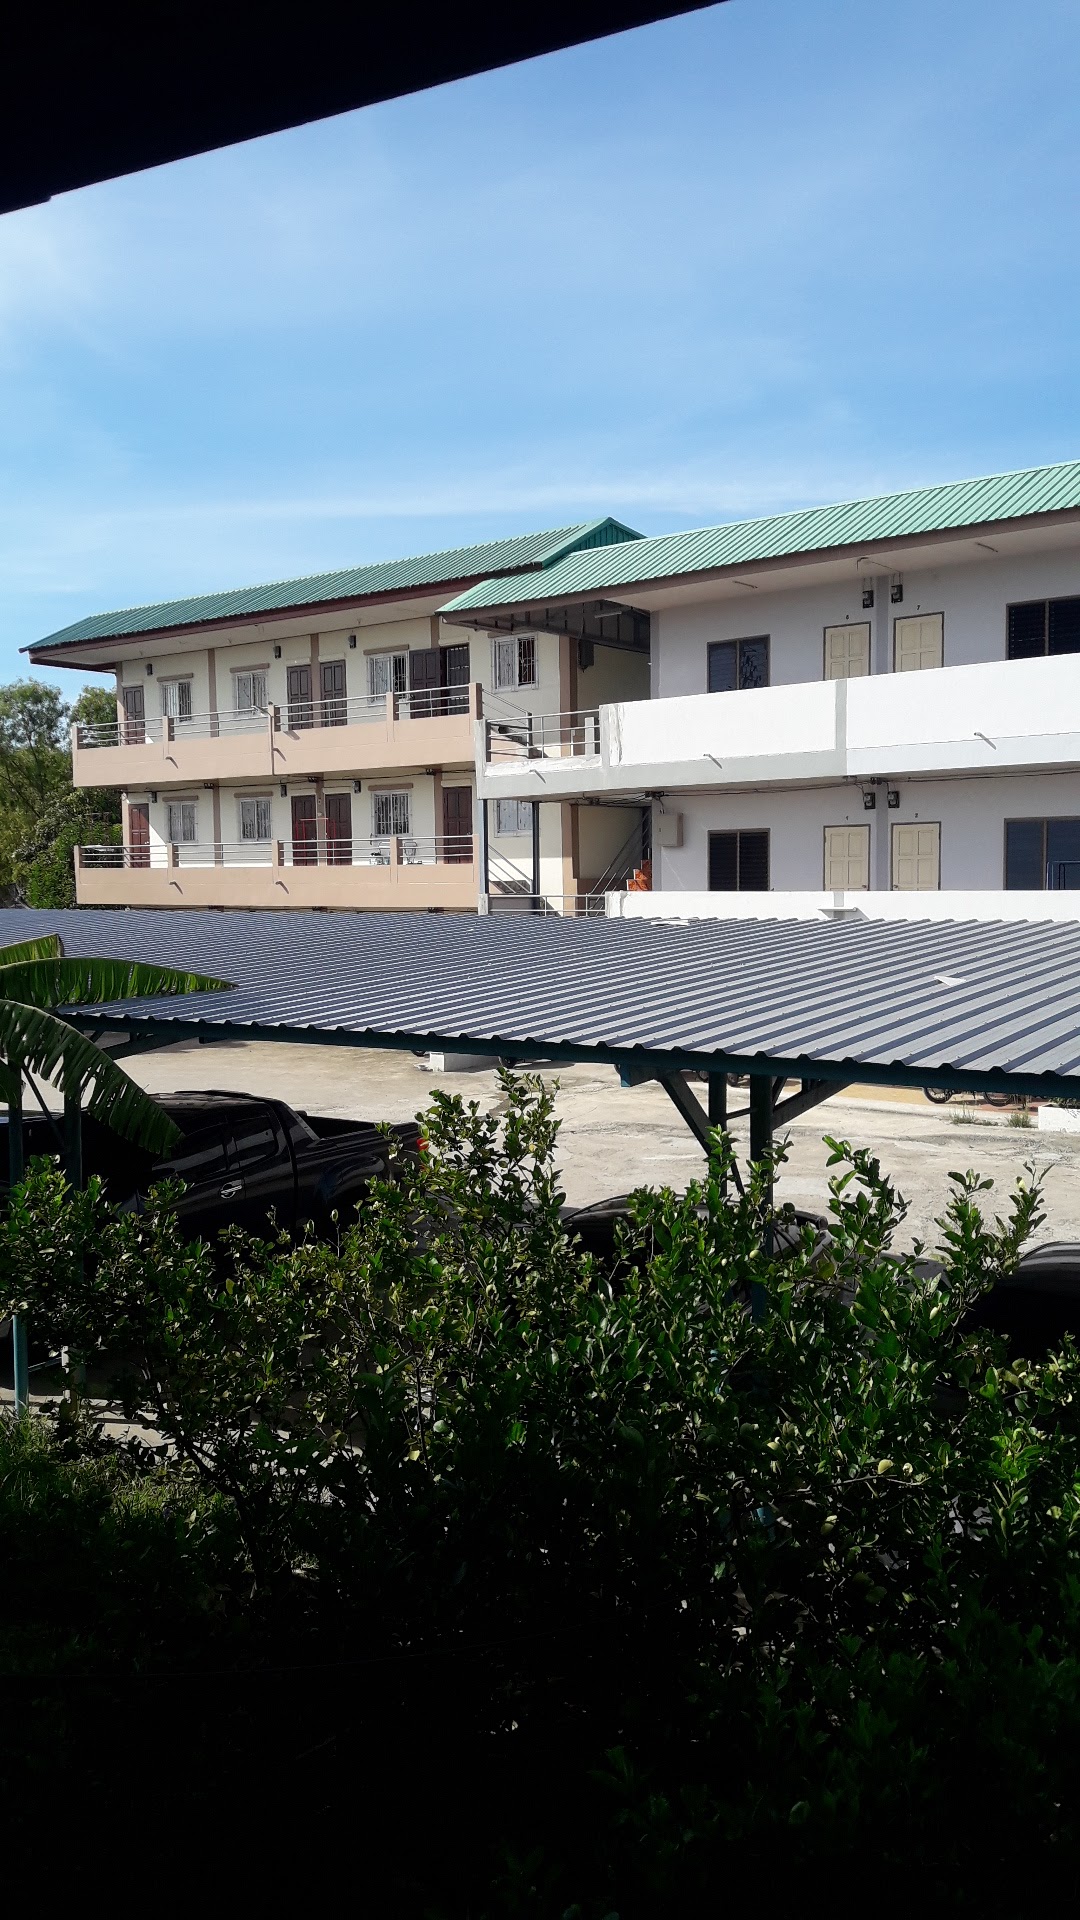 ห้องเช่าใกล้โรงเรียนหอวังปทุมธานี